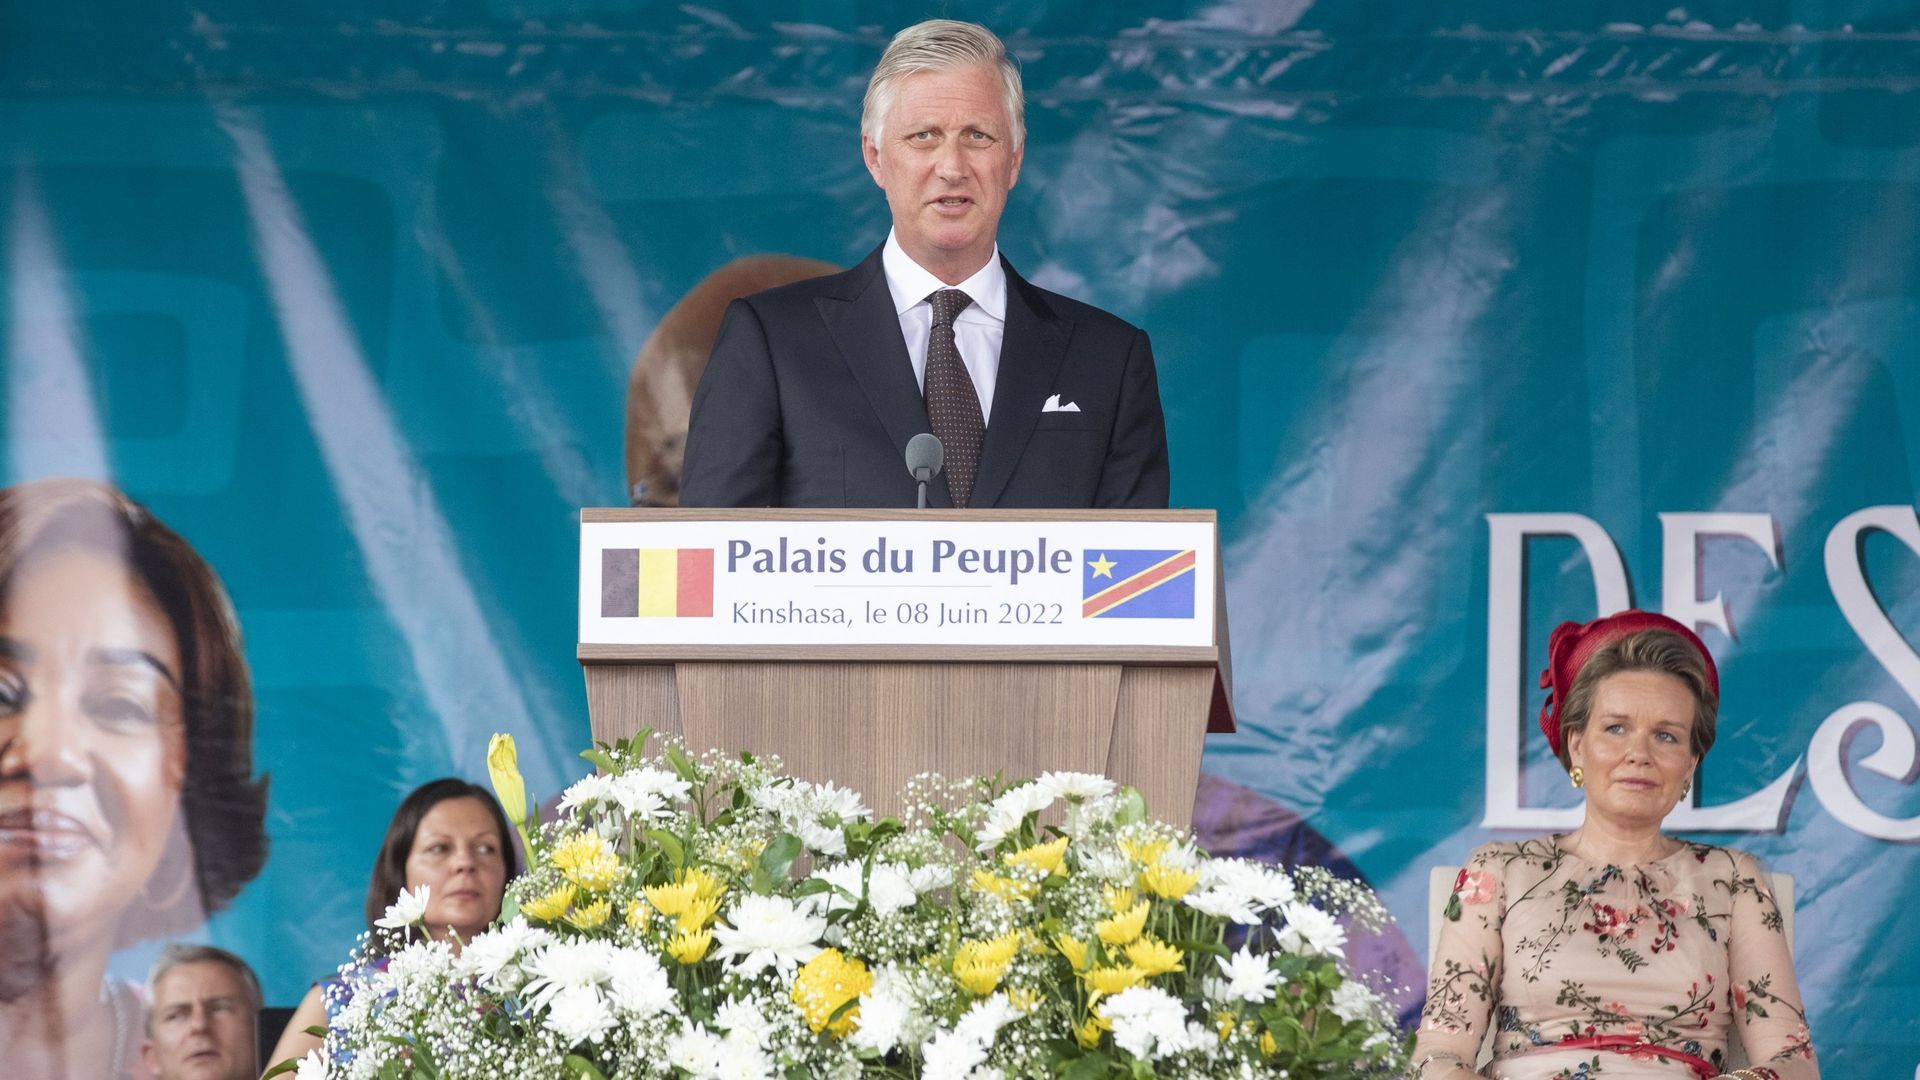 Le roi Philippe et la reine Mathilde au 'Palais du Peuple', à Kinshasa, lors d’une visite officielle du couple royal belge en République démocratique du Congo, mercredi 08 juin 2022. Le roi Philippe prononce son discours.